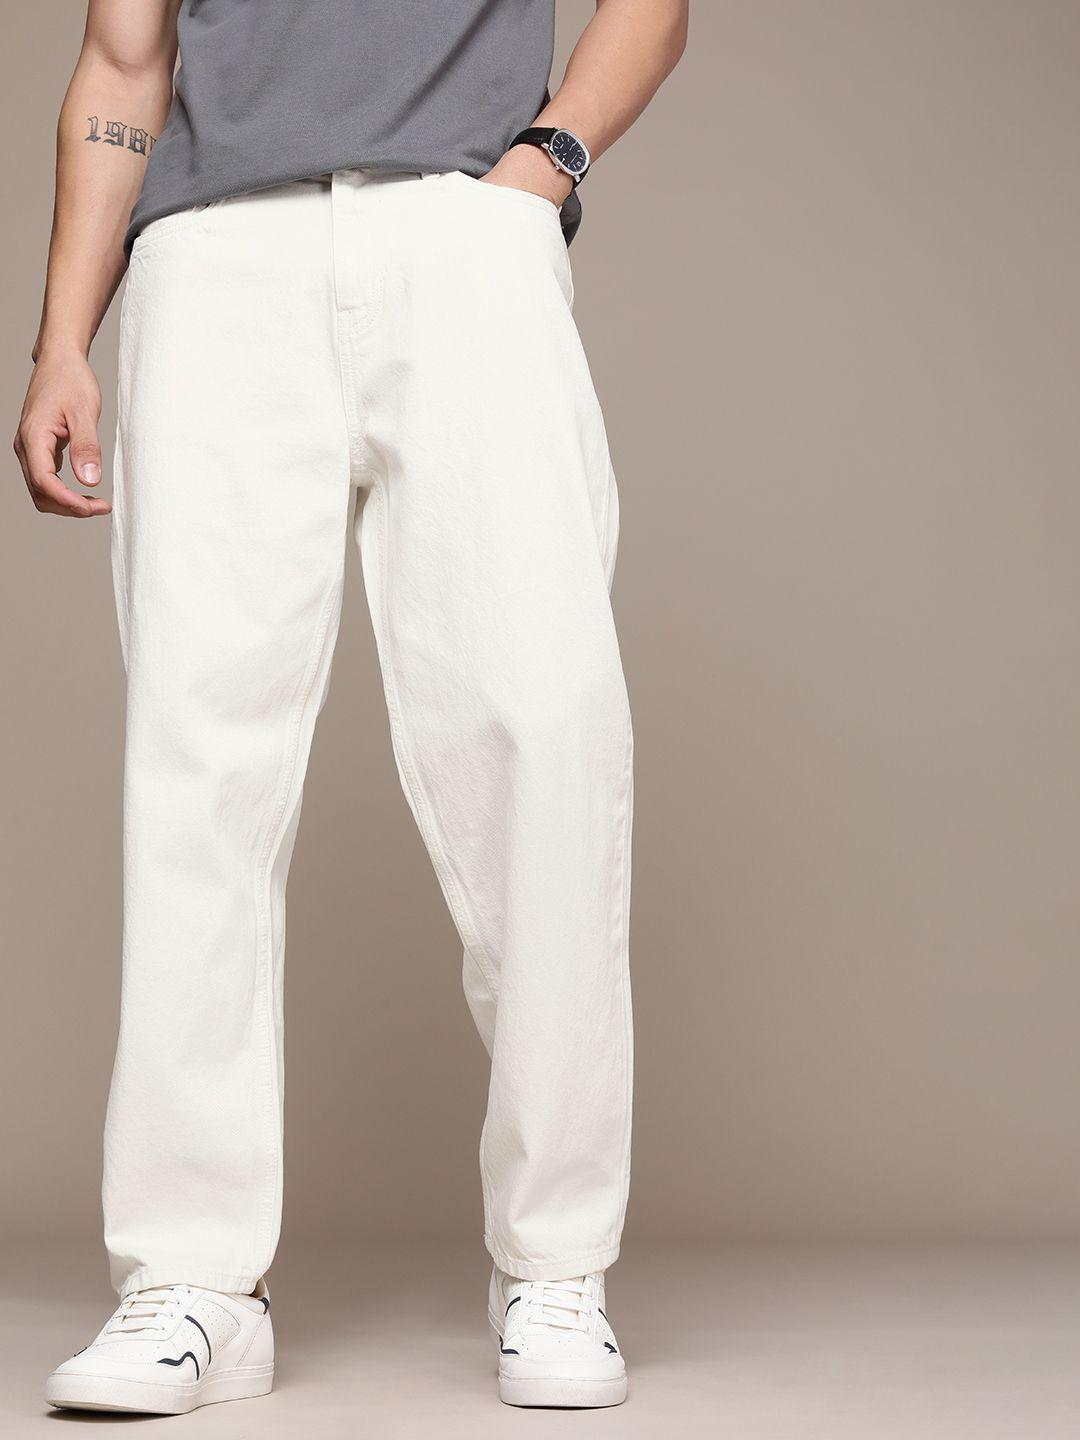 fcuk-men-loose-fit-mid-rise-pure-cotton-jeans